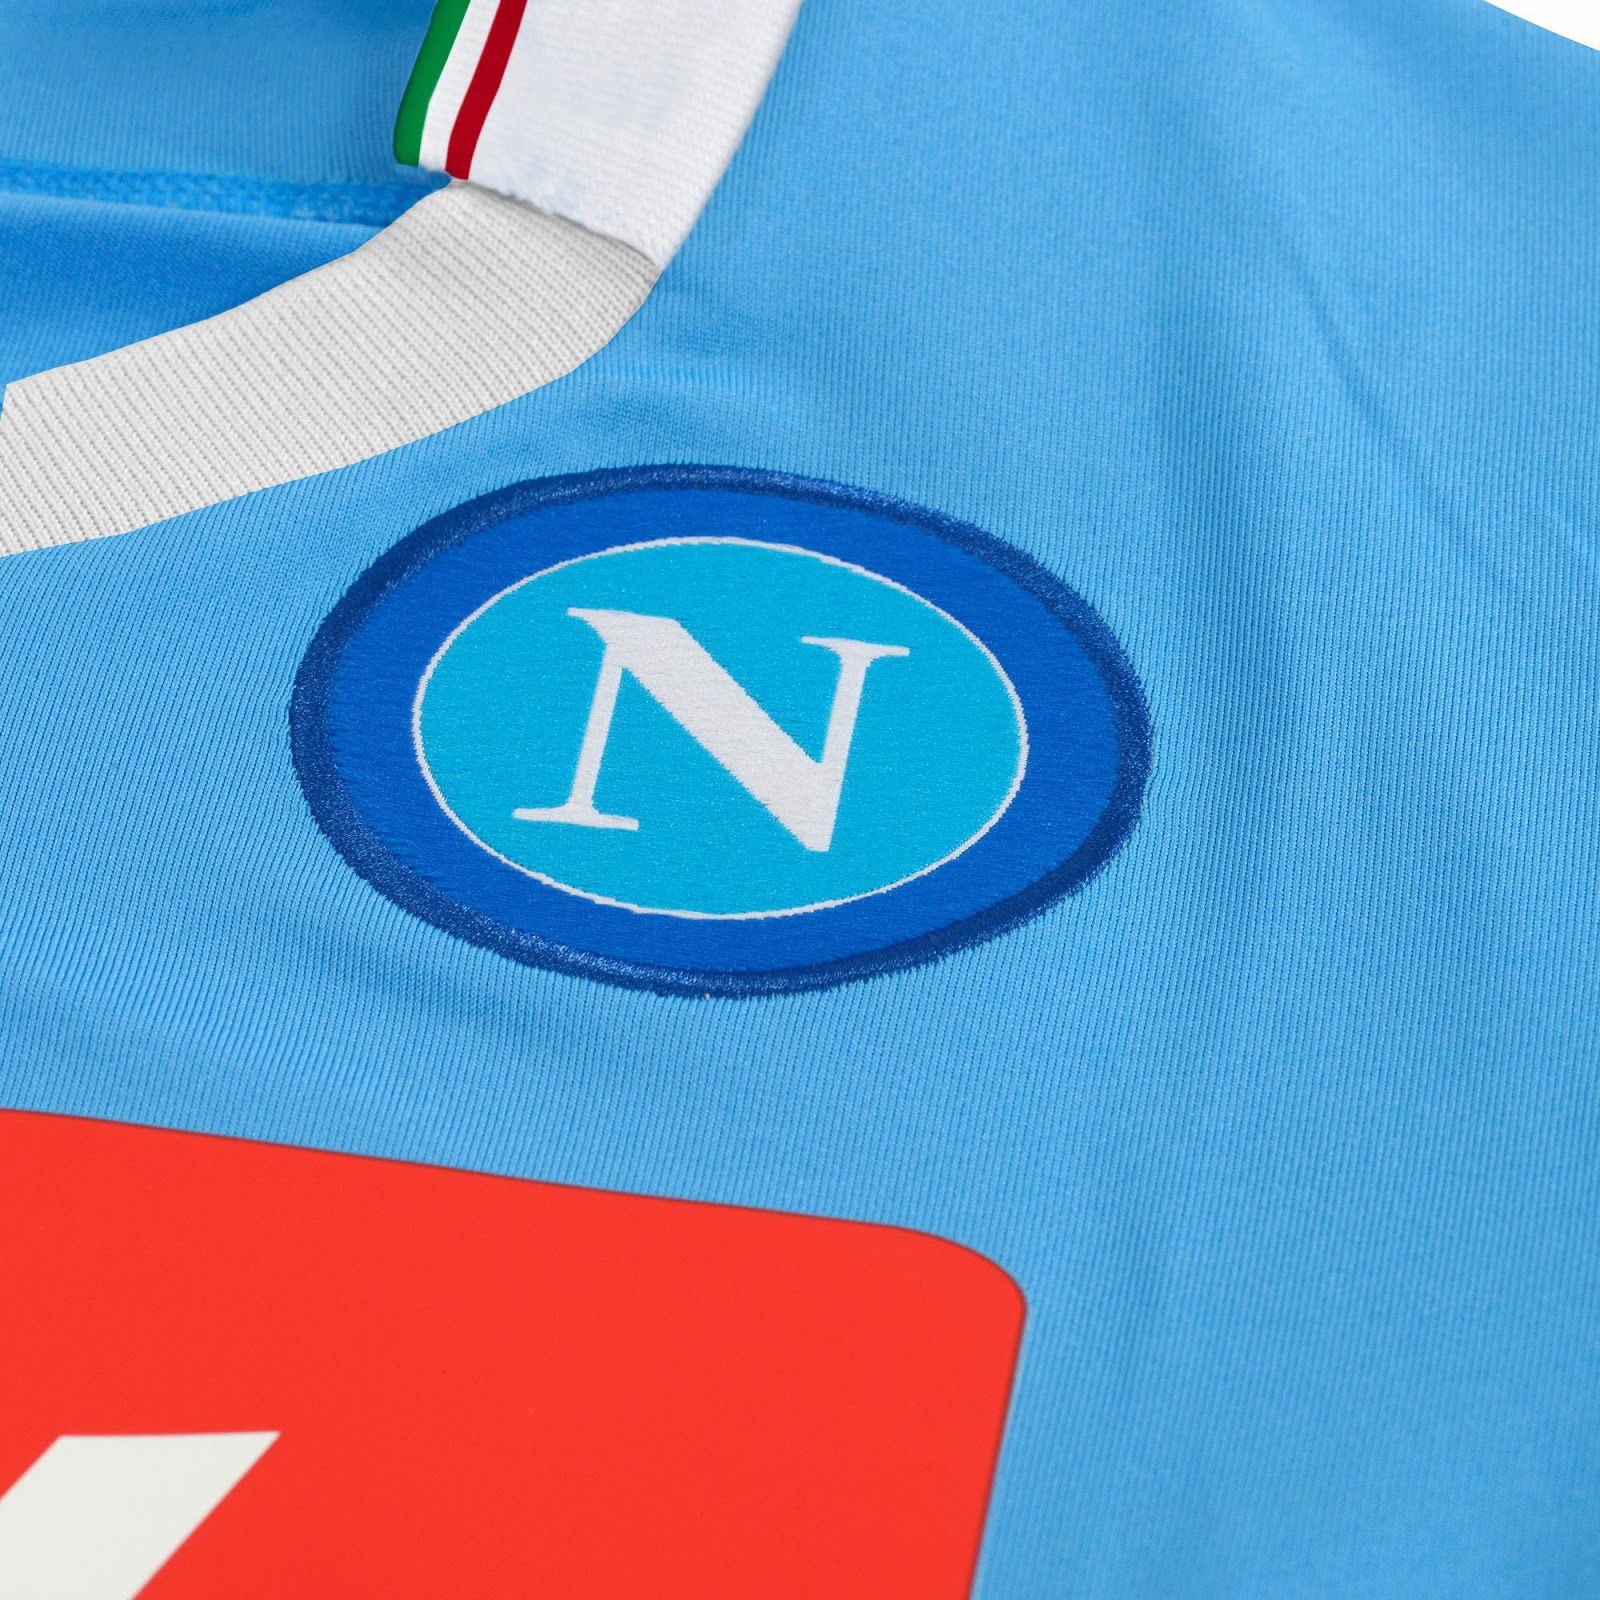 Special SSC Napoli 2014 Coppa Italia Final Kit - Footy Headlines